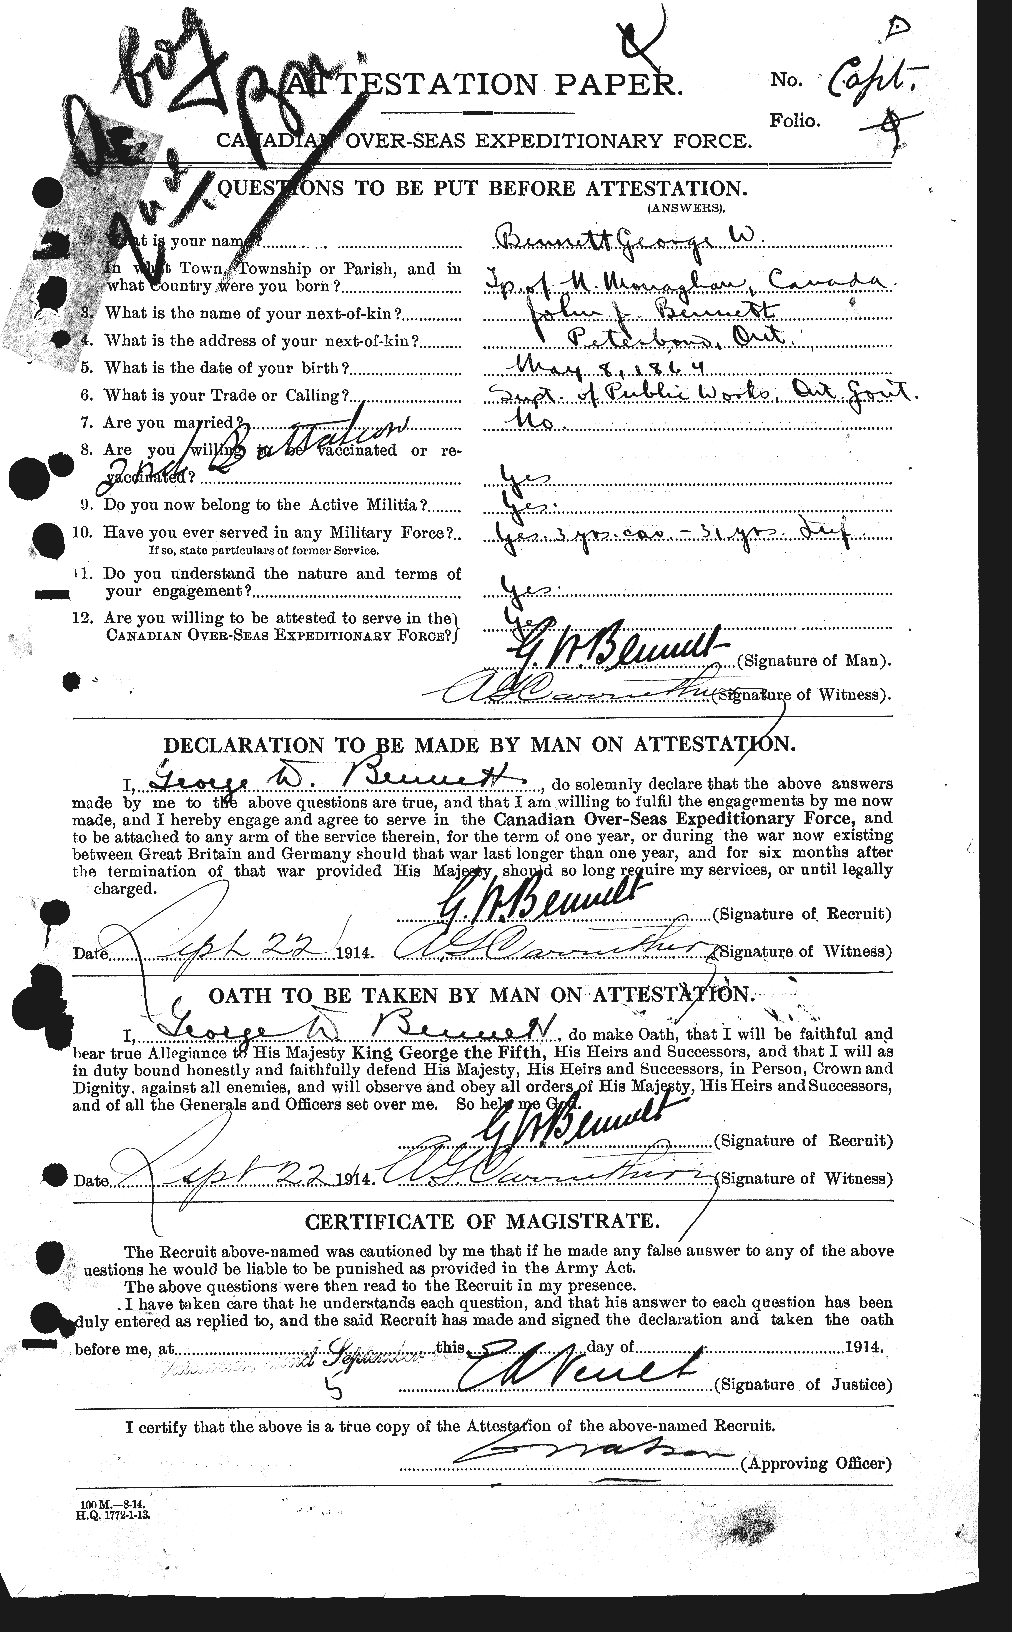 Dossiers du Personnel de la Première Guerre mondiale - CEC 238424a